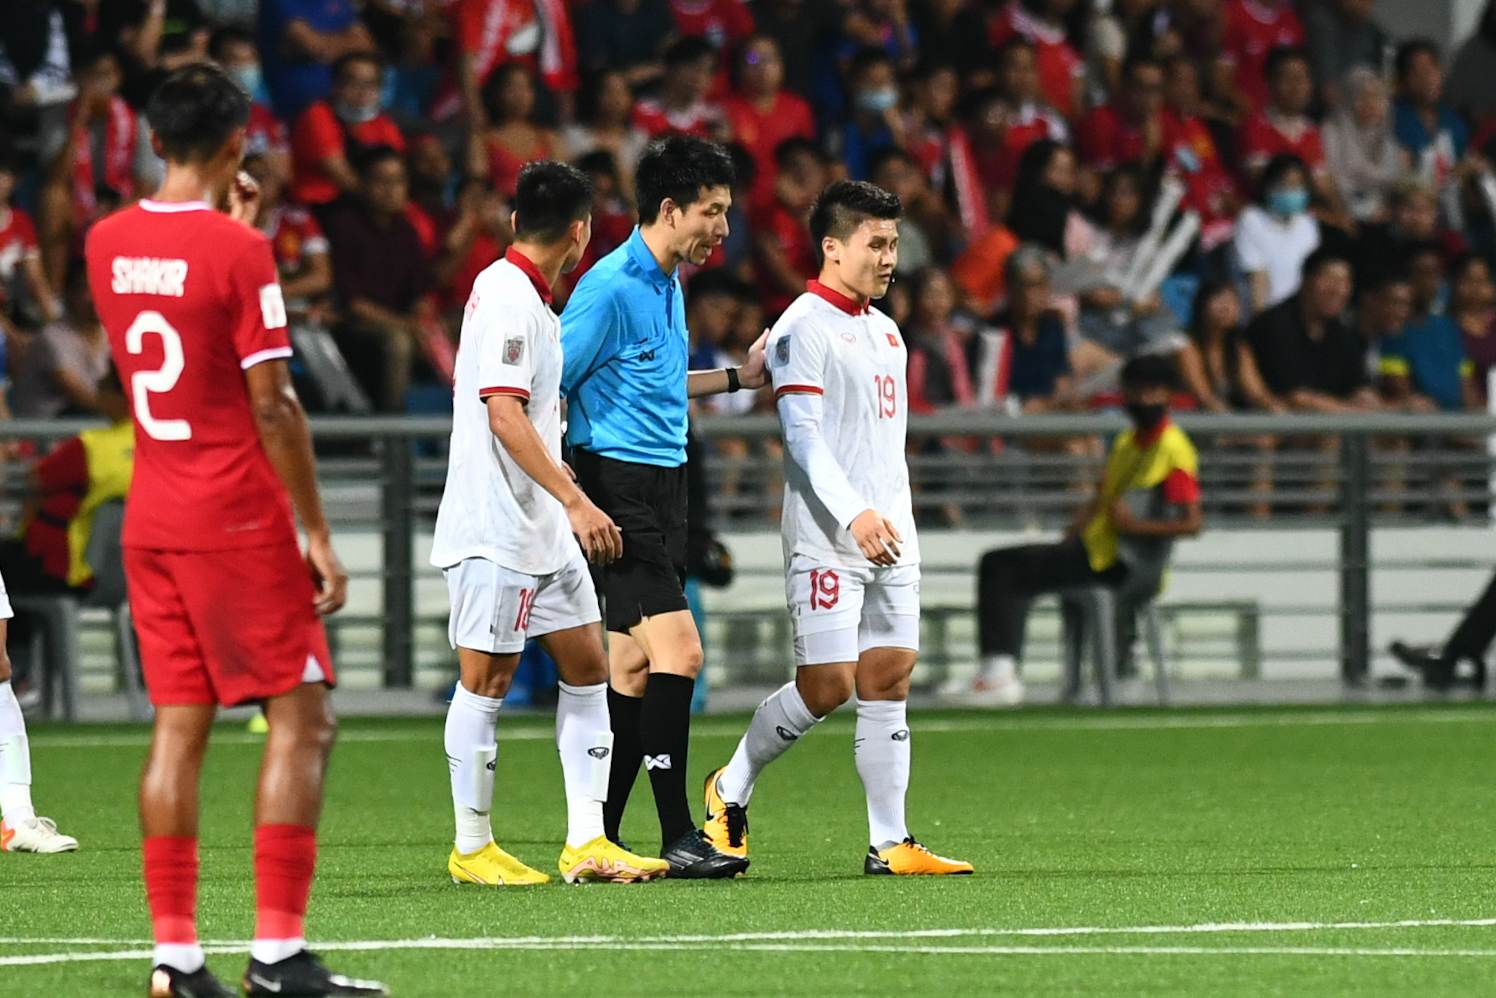 Văn Thanh bị cầu thủ Singapore chơi xấu nhưng trọng tài không thổi phạt - Ảnh 4.